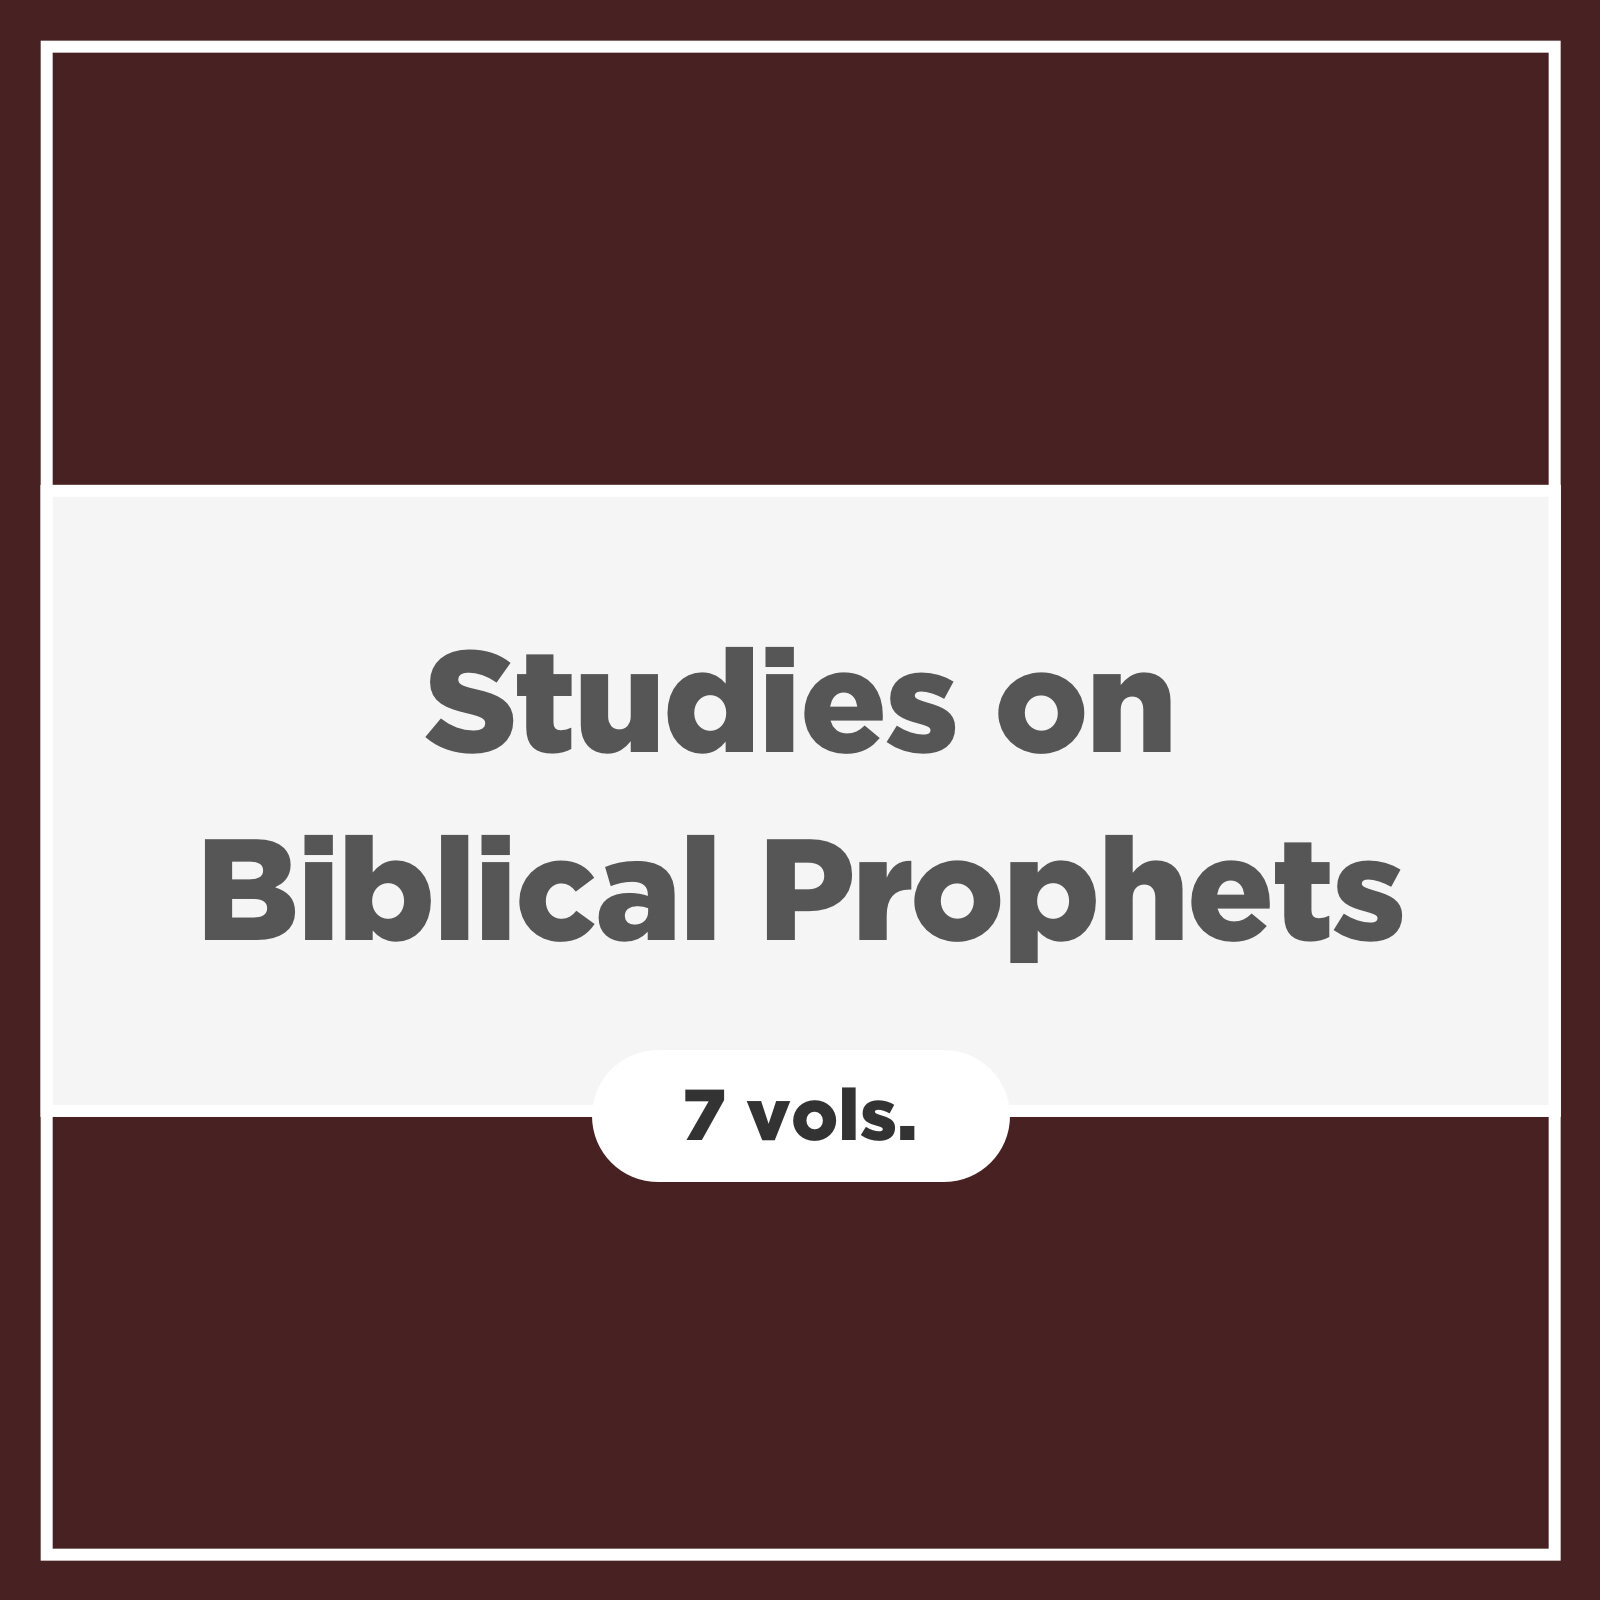 Studies on Biblical Prophets (7 vols.)